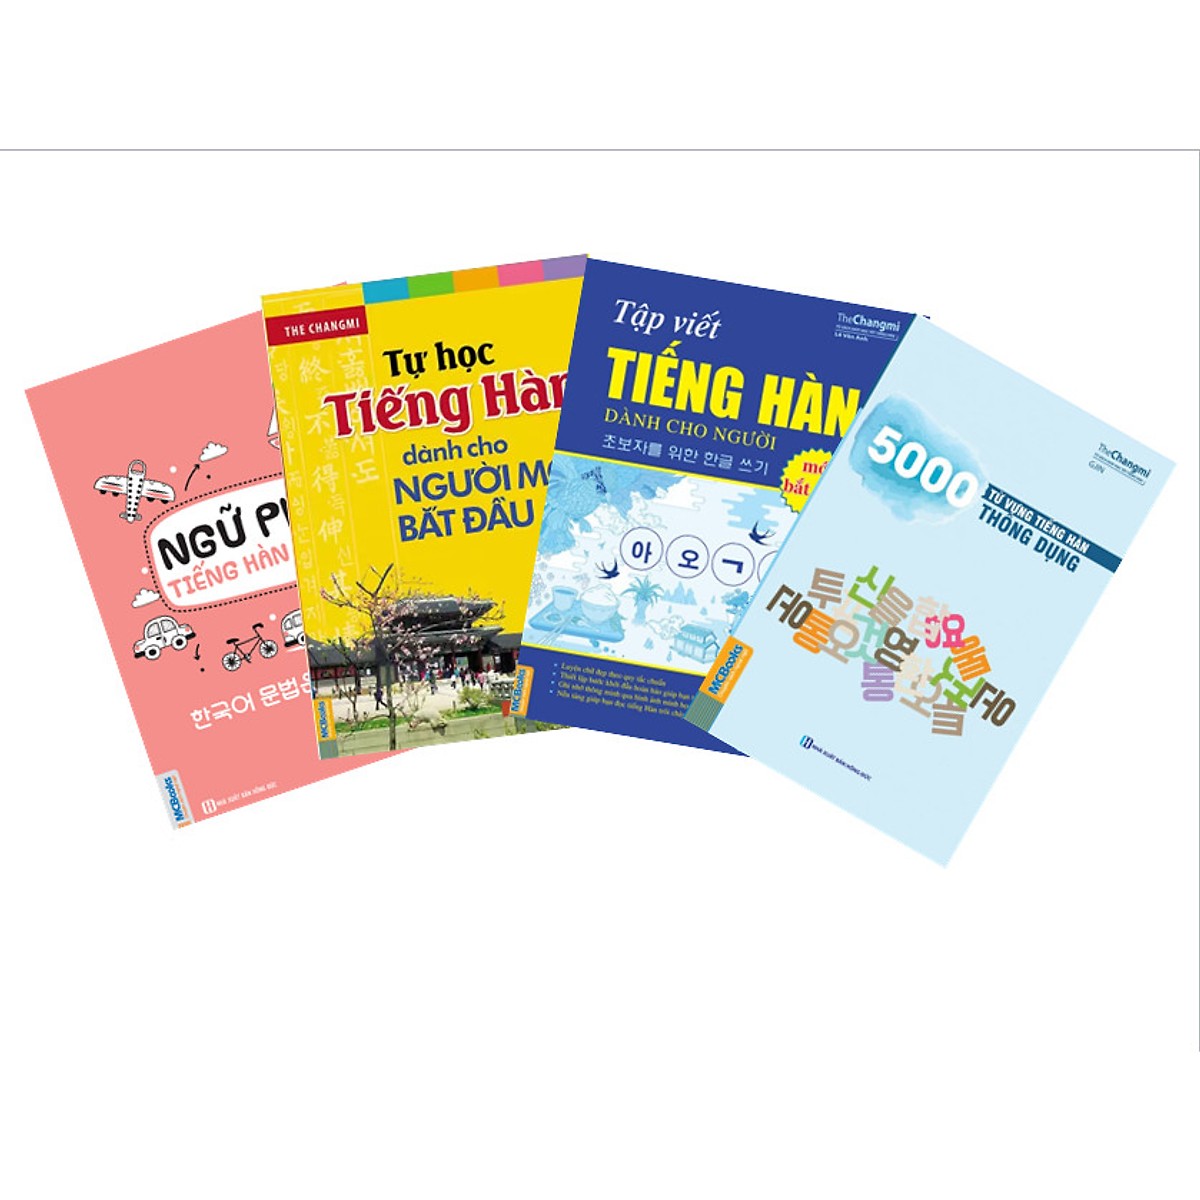 Combo 4 Cuốn Sách: Tự Học Tiếng Hàn Cho Người Mới Bắt Đầu, Ngữ Pháp Tiếng Hàn Bỏ Túi, 5000 Từ Vựng Tiếng Hàn Theo Chủ Đề Và Tập Viết Tiếng Hàn Cho Người Mới Bắt Đầu (Tặng kèm bút chì Kingbooks)